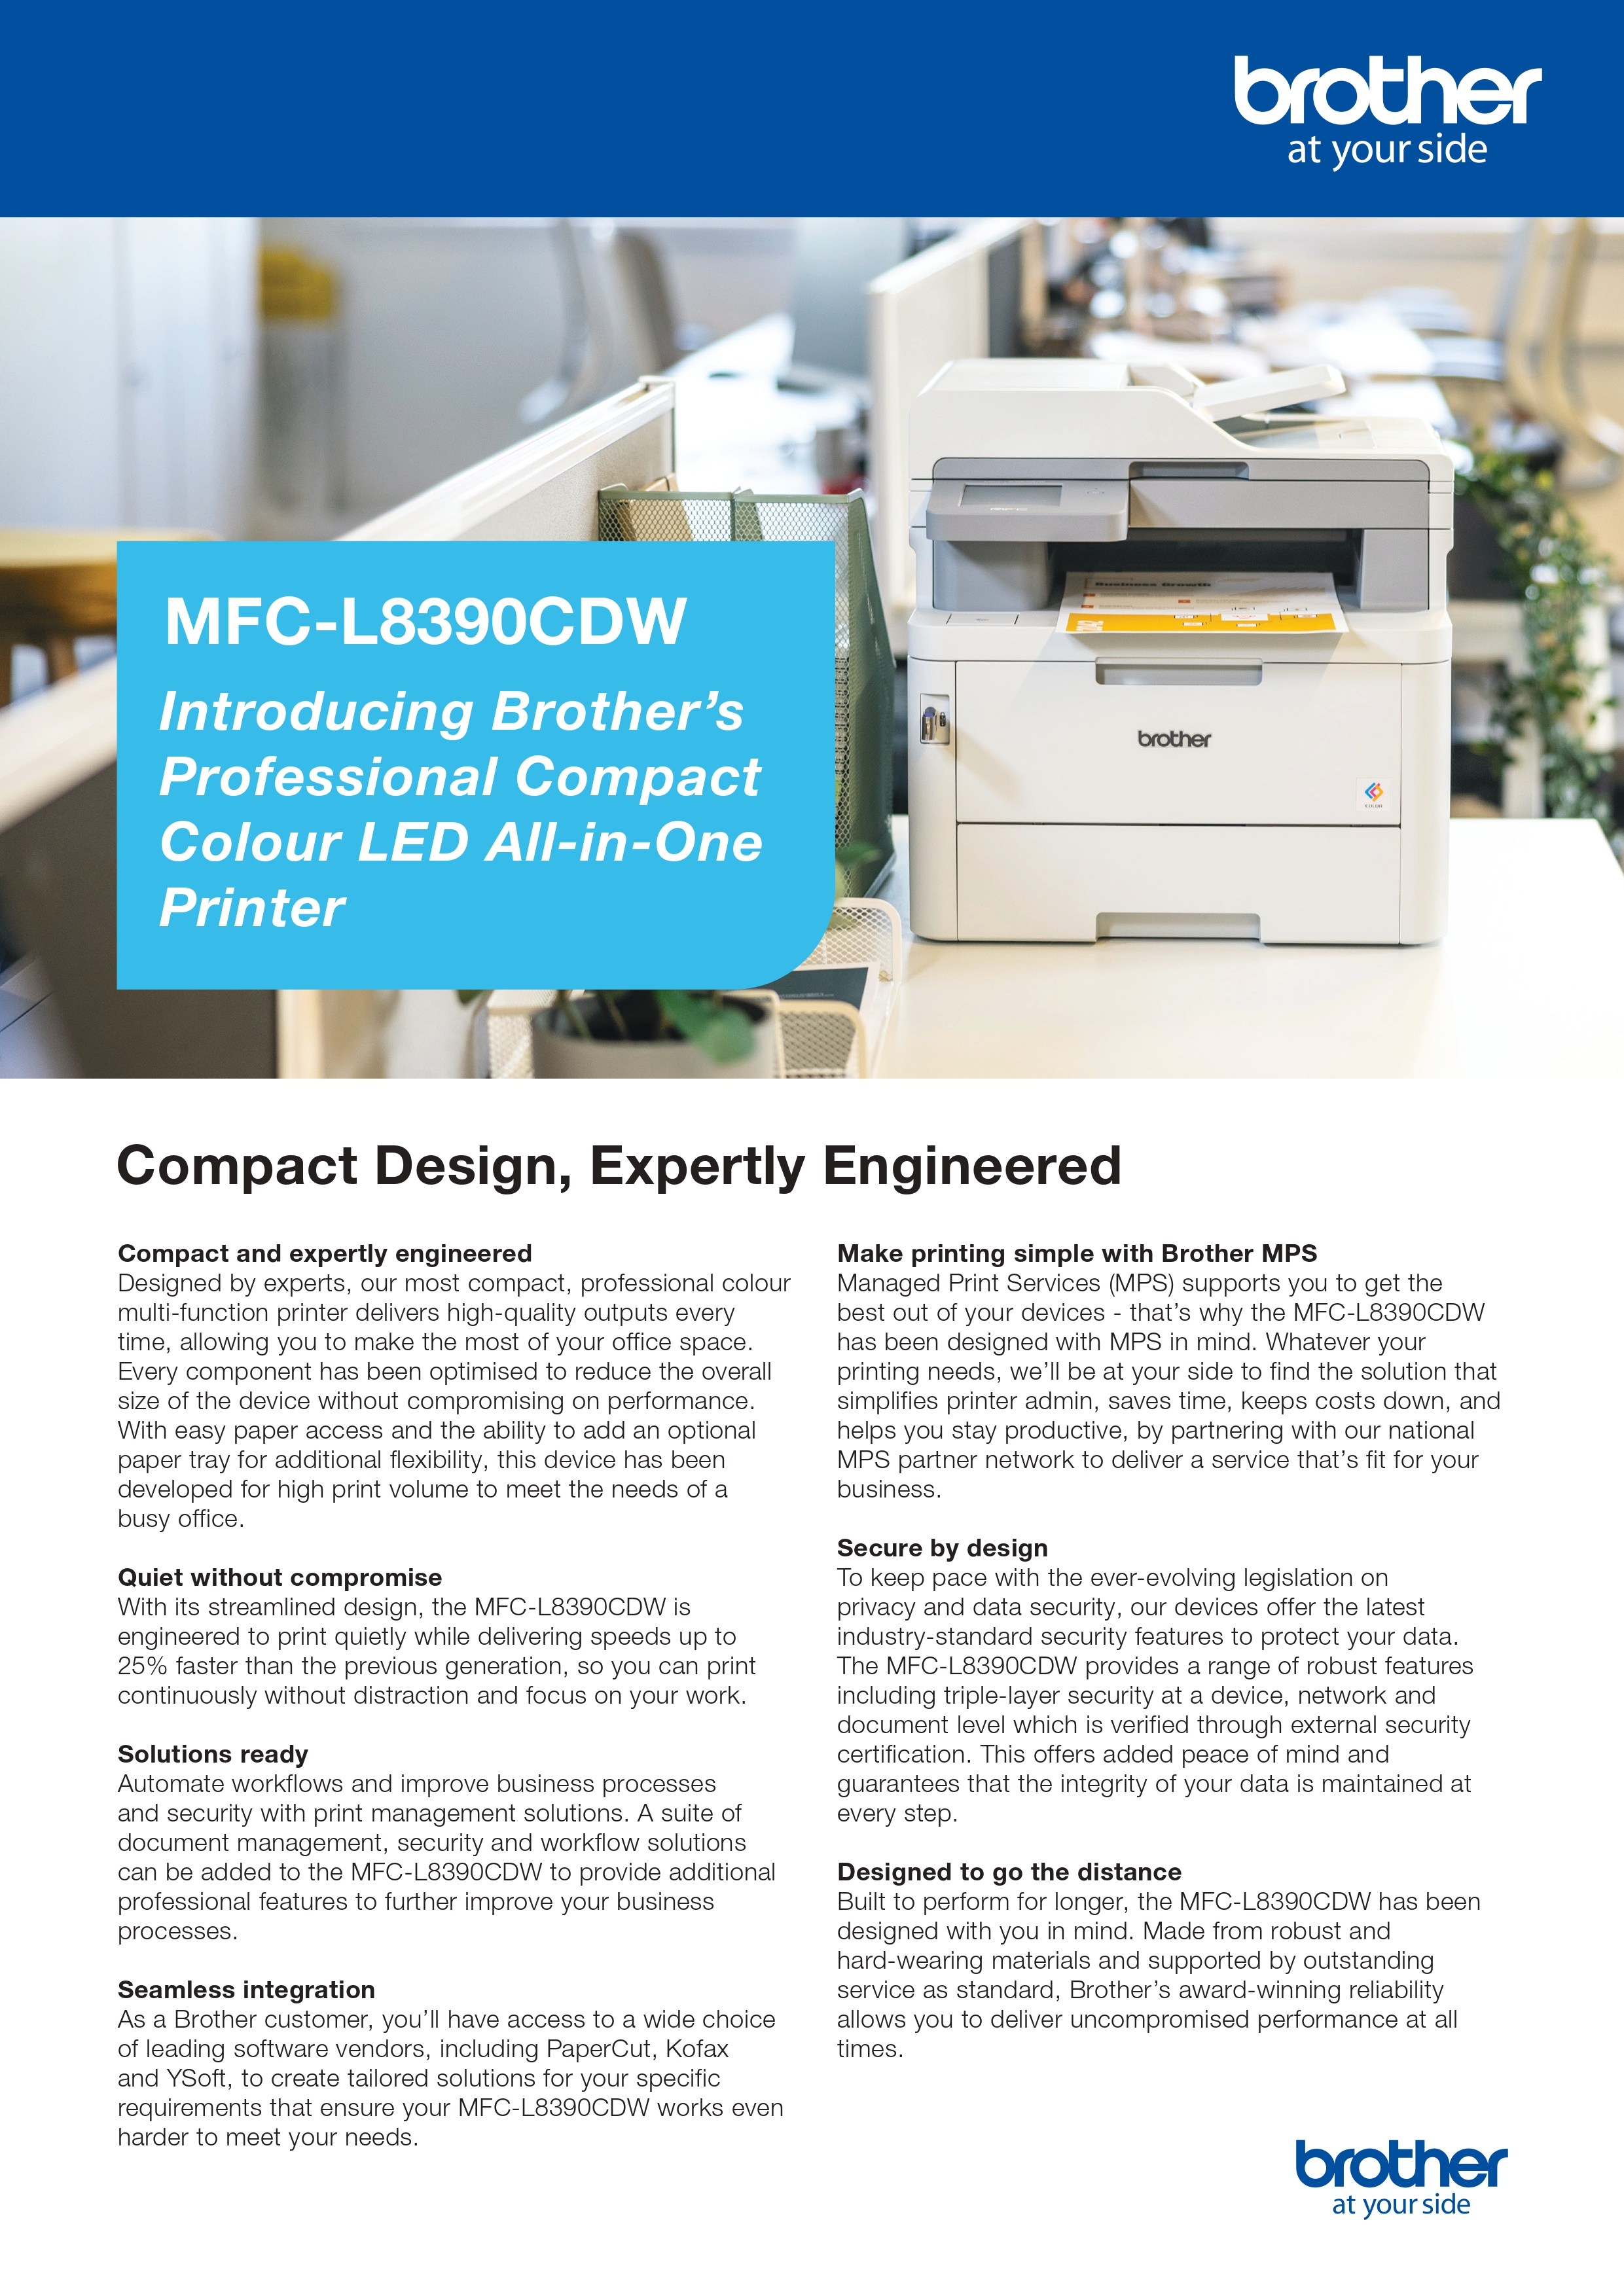 Brother MFC L8390CDW impresora laser color multifunción WIFI